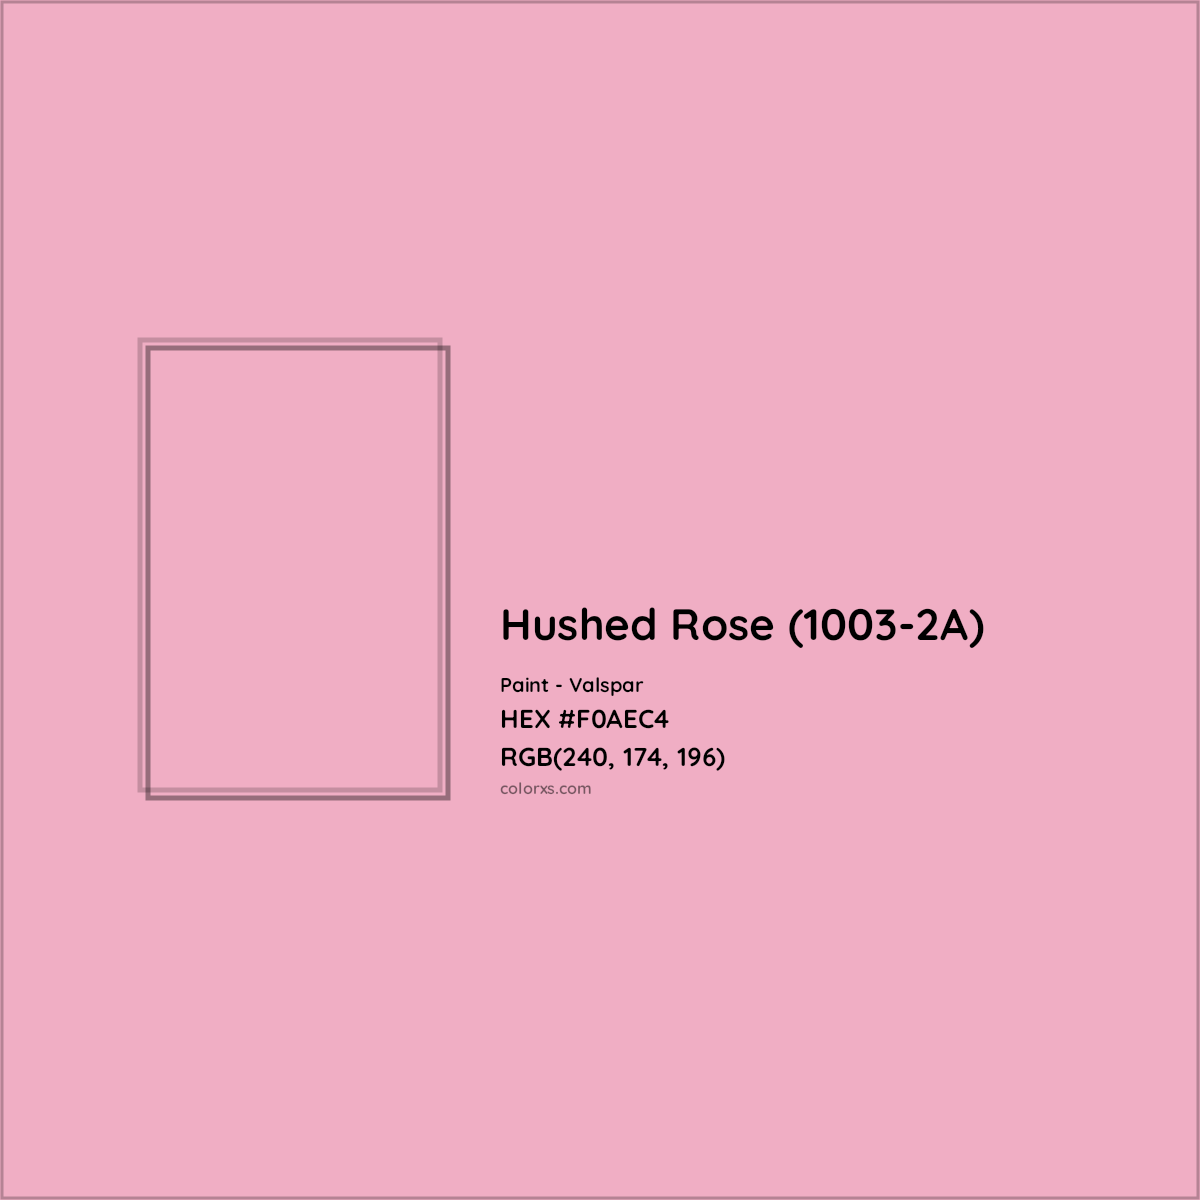 HEX #F0AEC4 Hushed Rose (1003-2A) Paint Valspar - Color Code